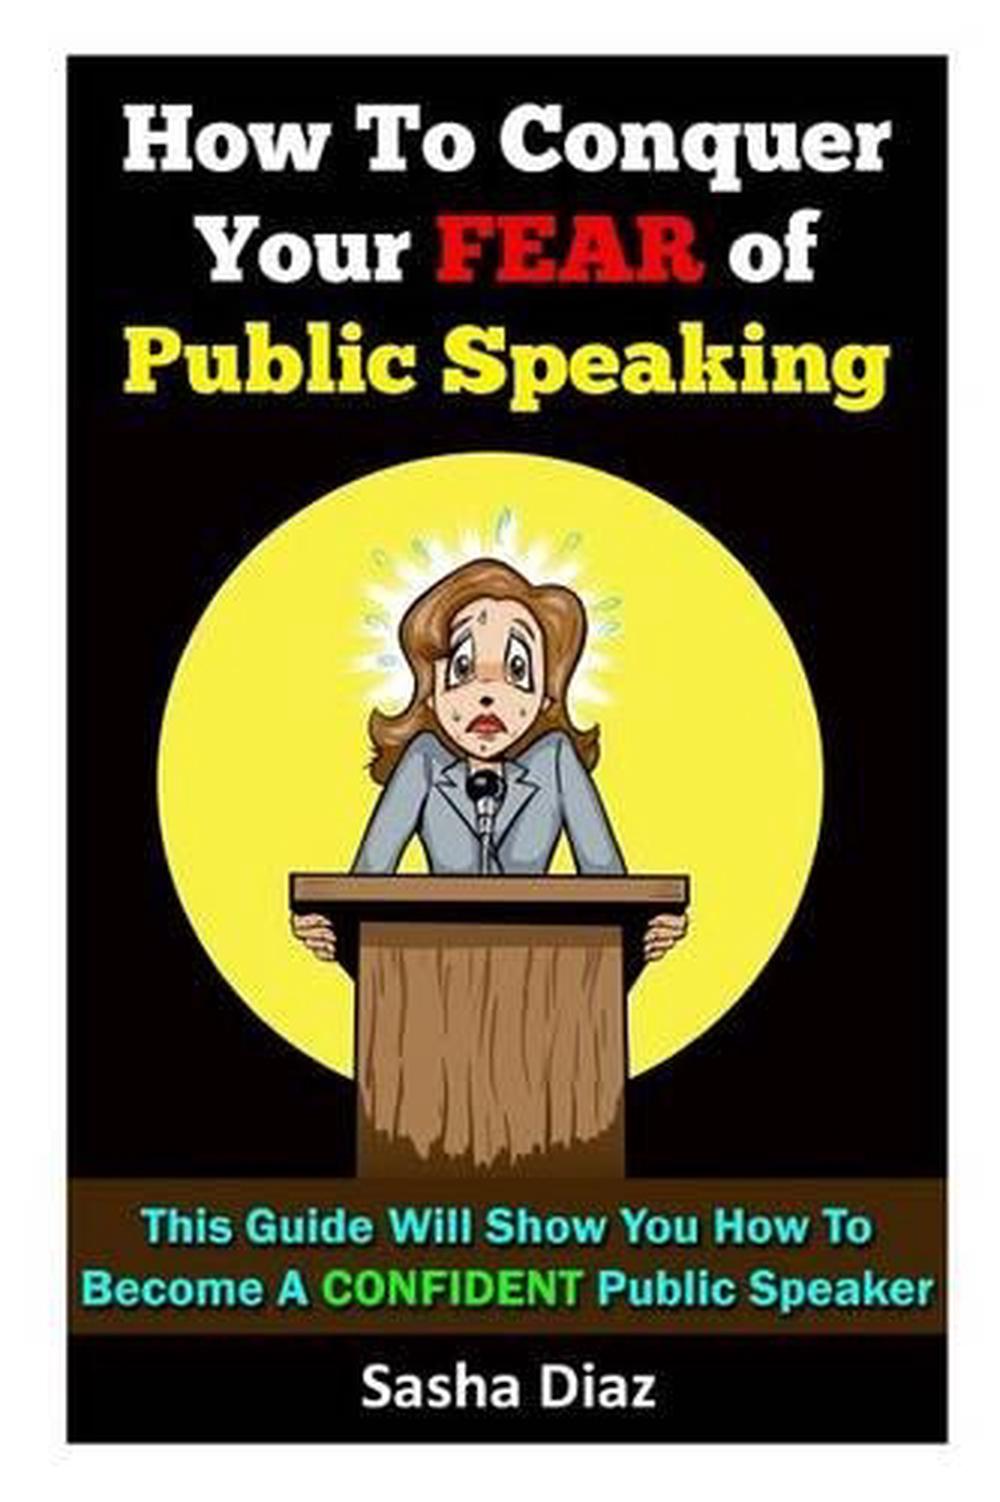 my fear of public speaking essay